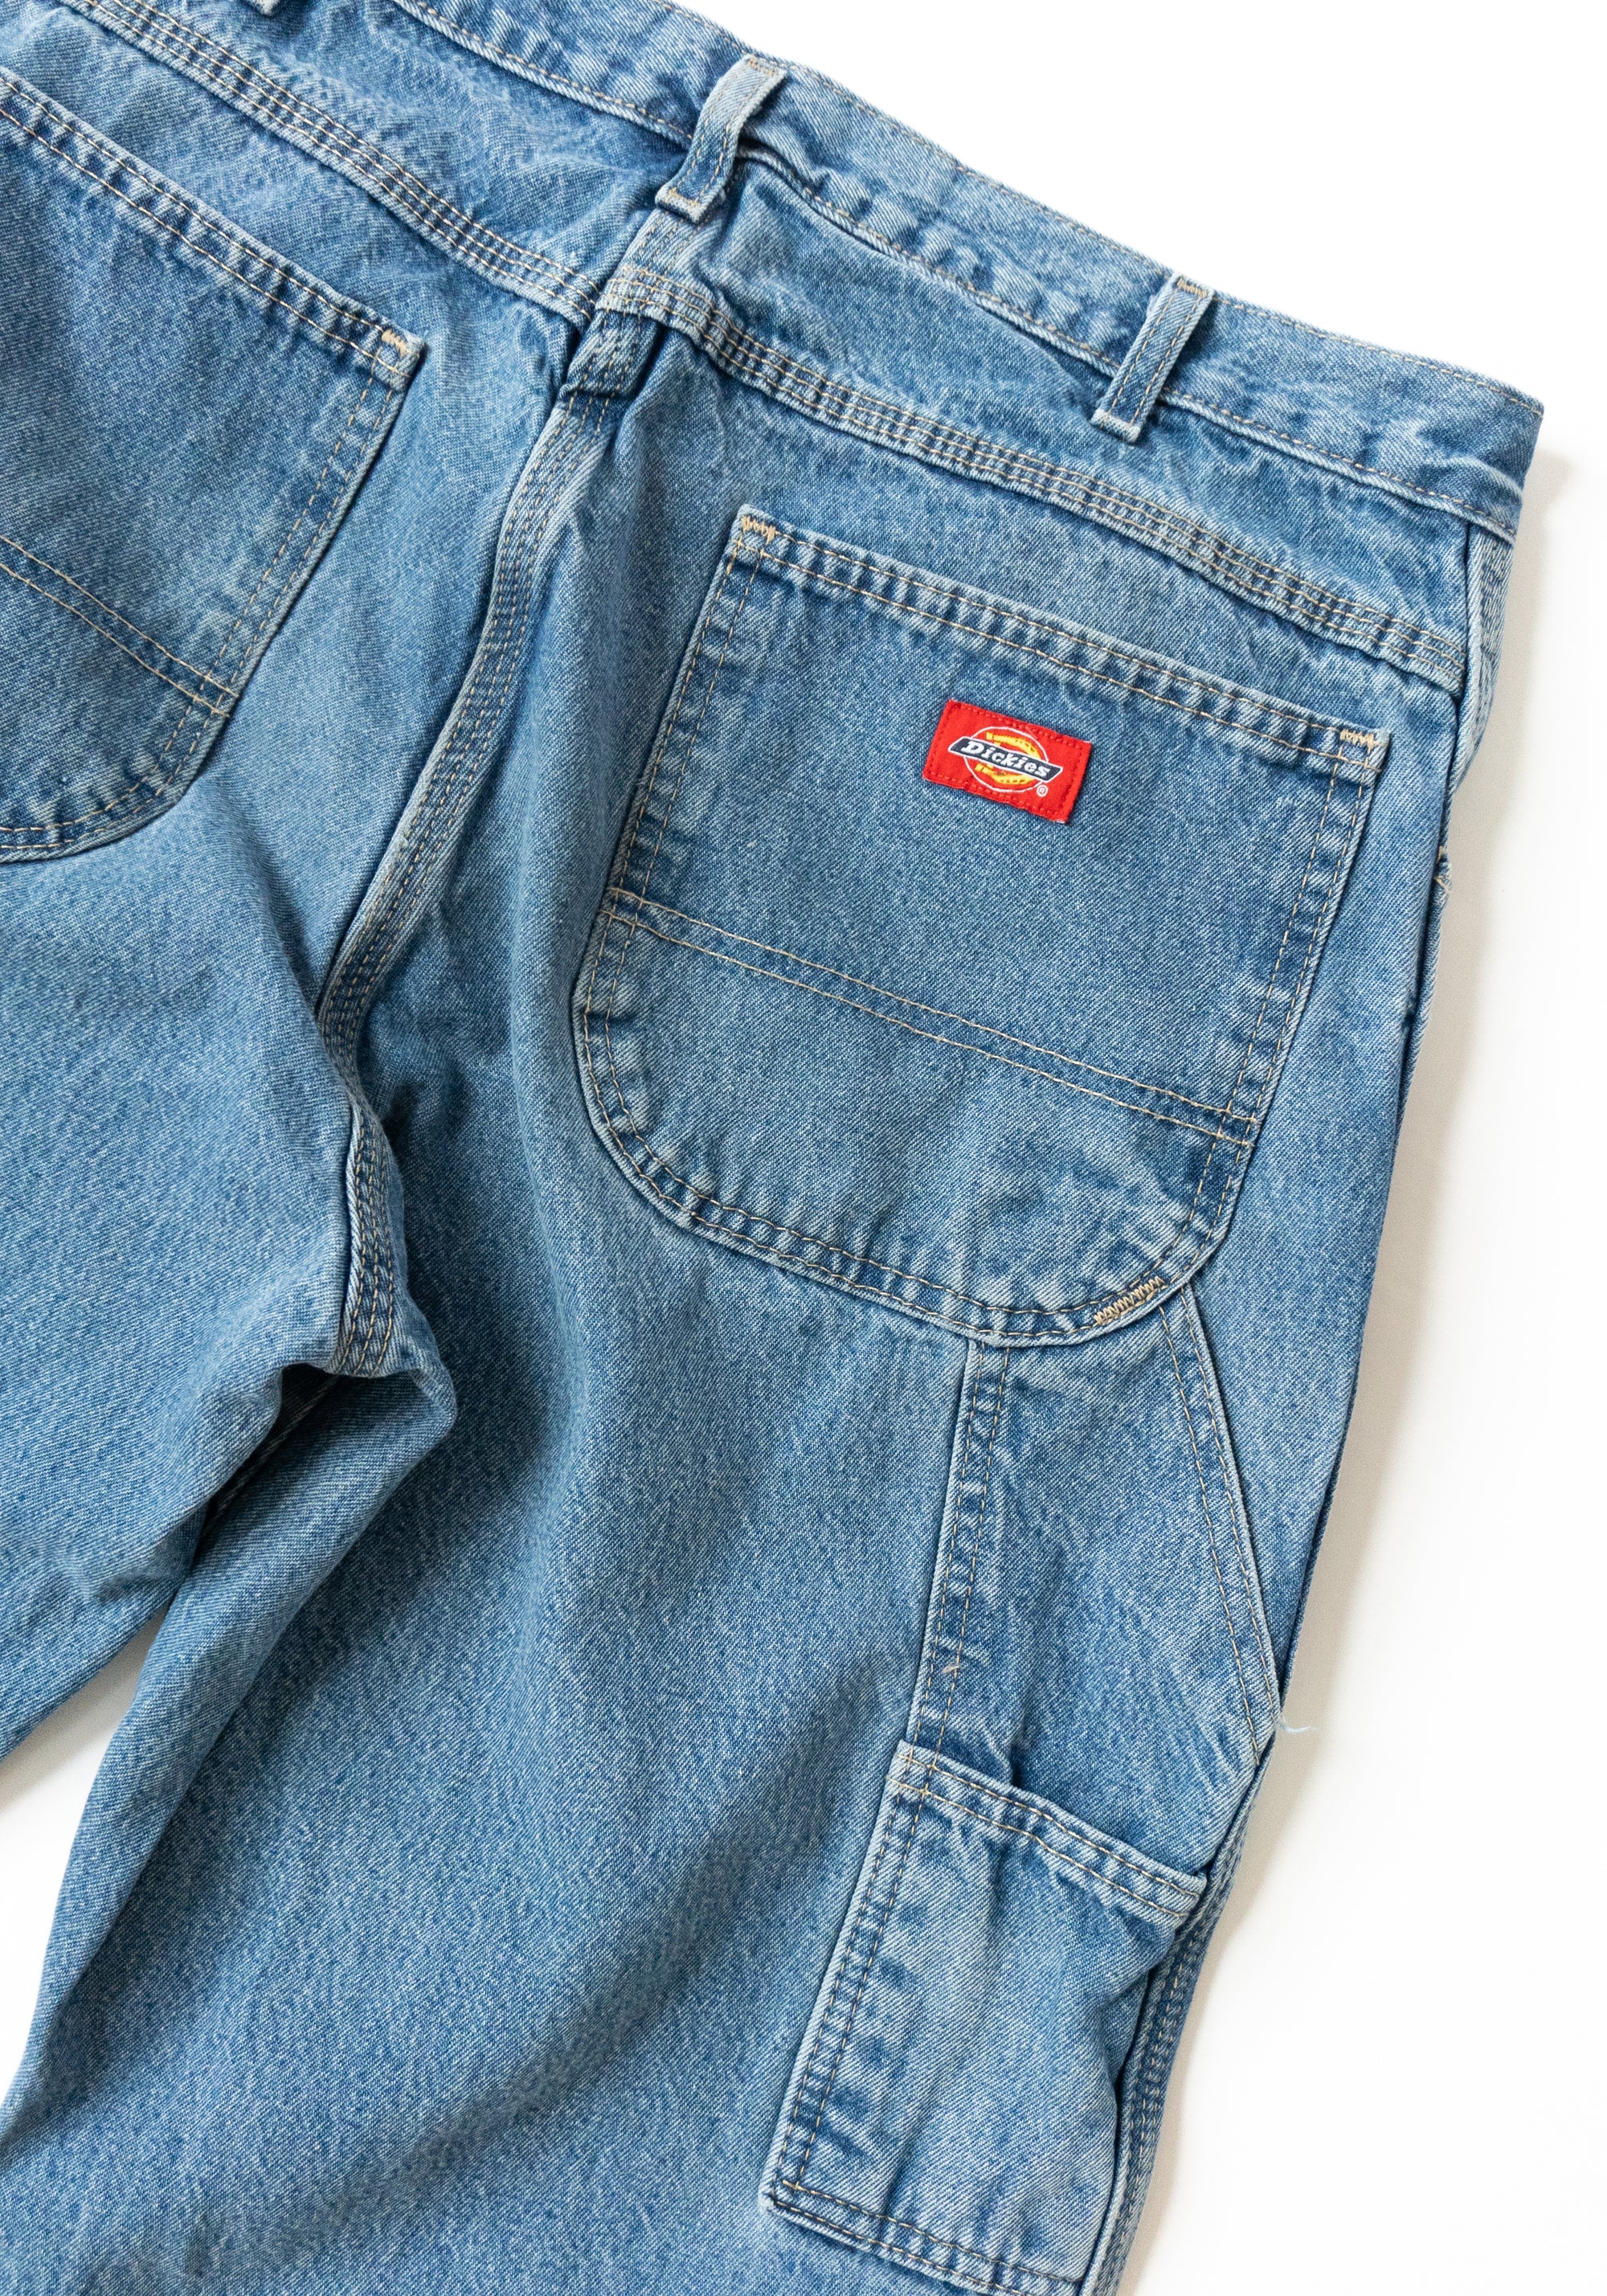 Vintage 90s Dickies Carpenter Jeans